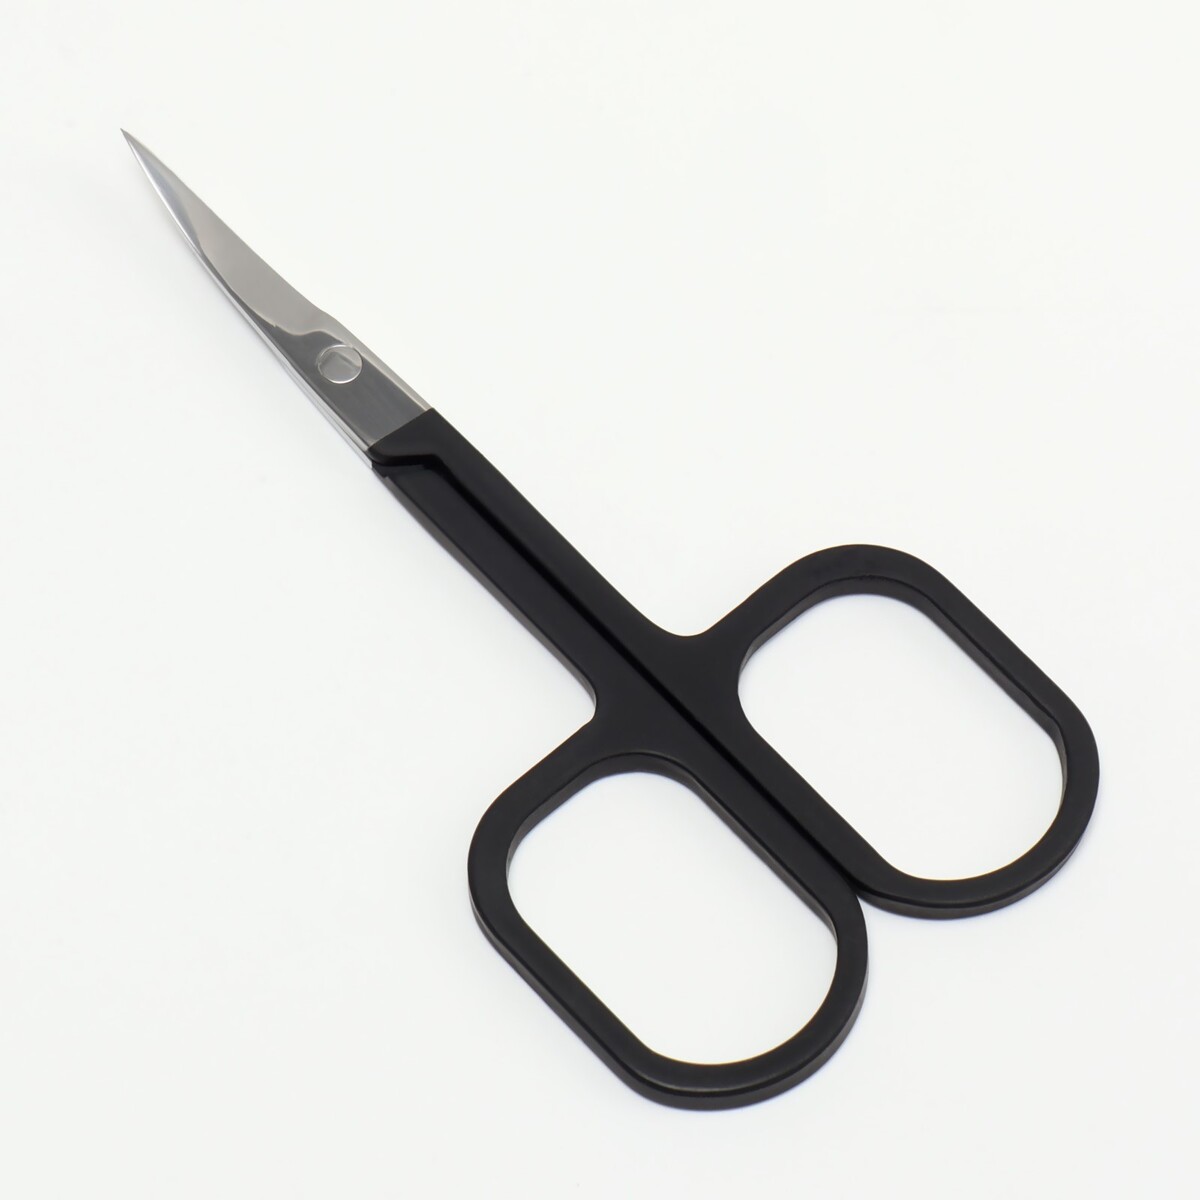 Ножницы маникюрные, узкие, загнутые, с прорезиненными ручками, 9 см, цвет серебристый/черный